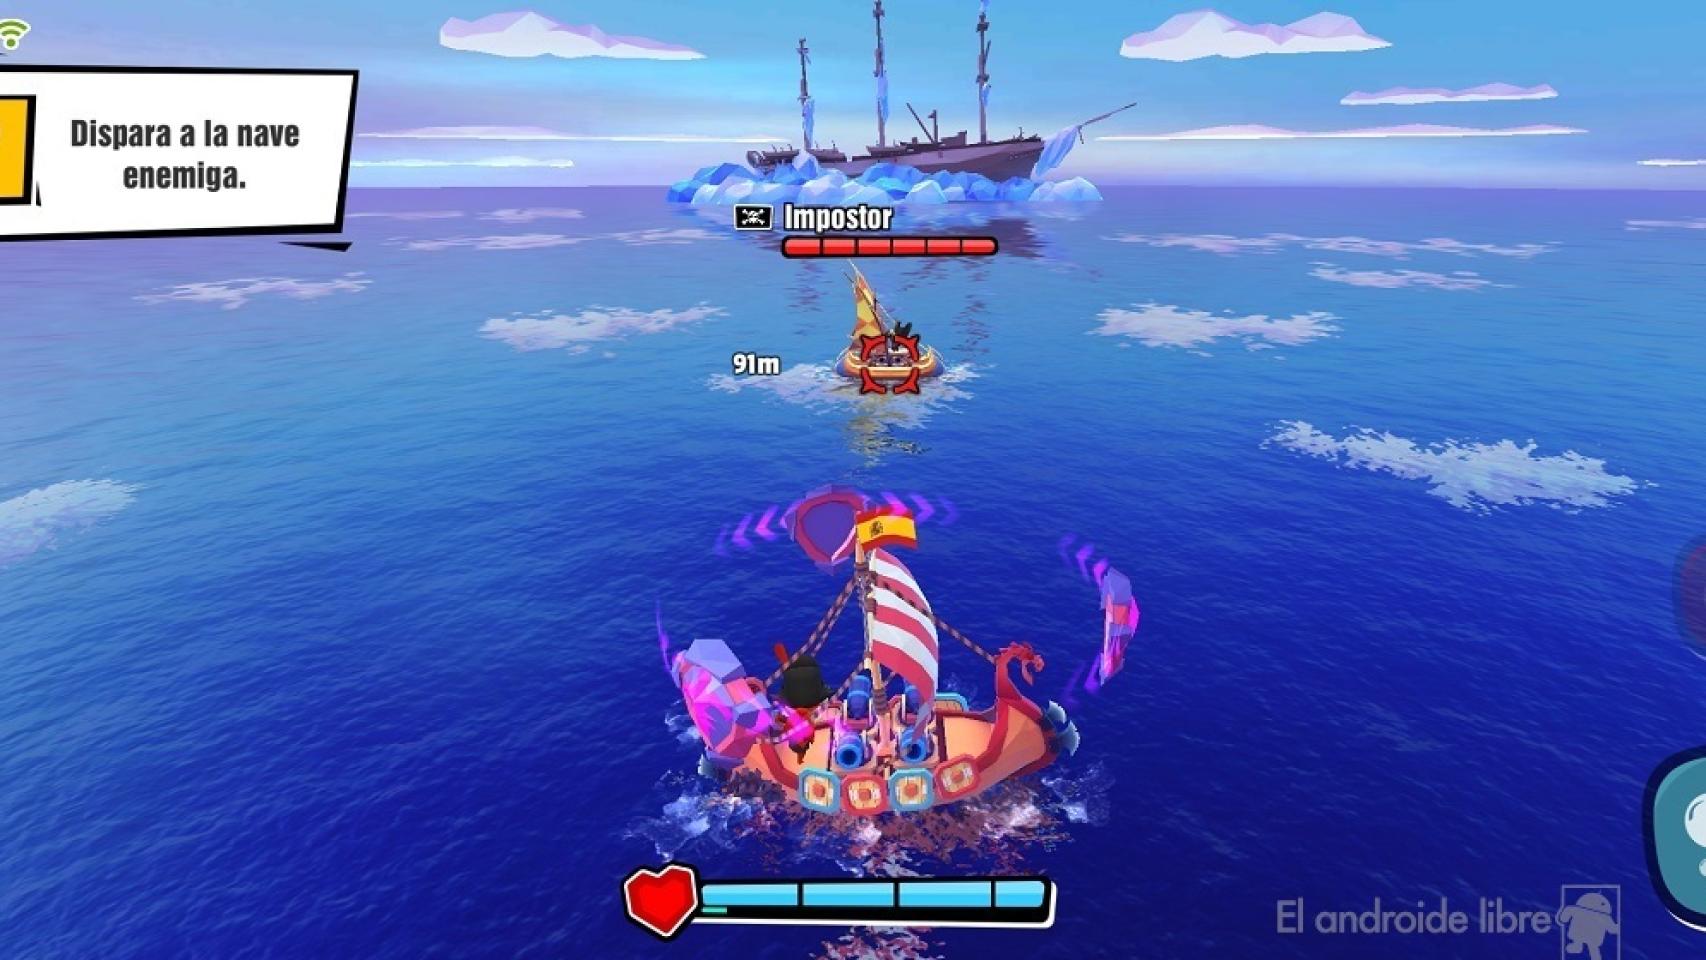 Pirate un juego de batallas barcos de piratas muy entretenido